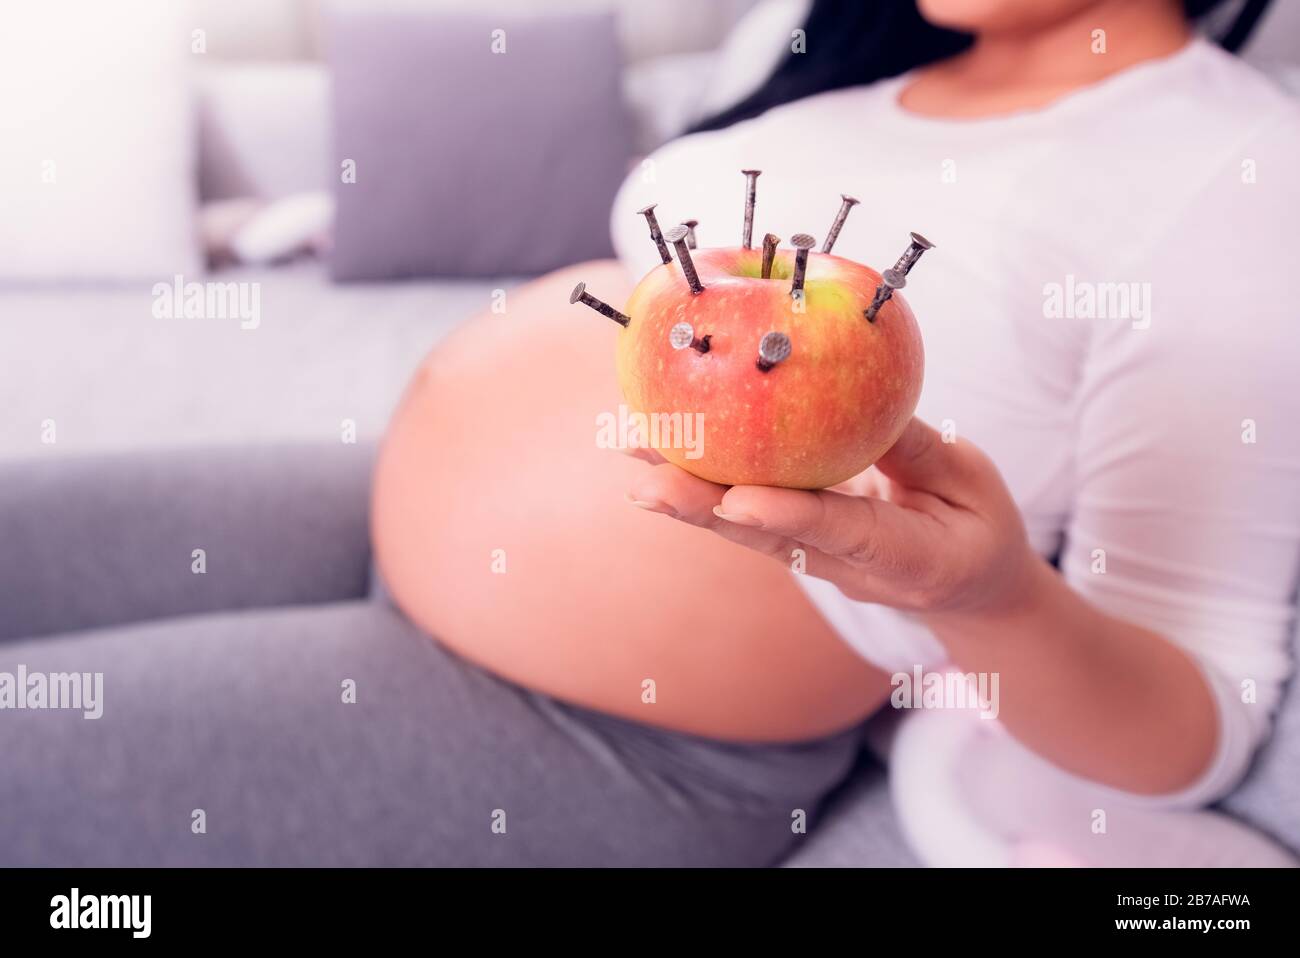 Donna incinta che mangia mela farcita con unghie di legno per aumentare il livello di ferro nel sangue. Trattamento vecchio stile per aumentare l'emoglobina. Foto Stock